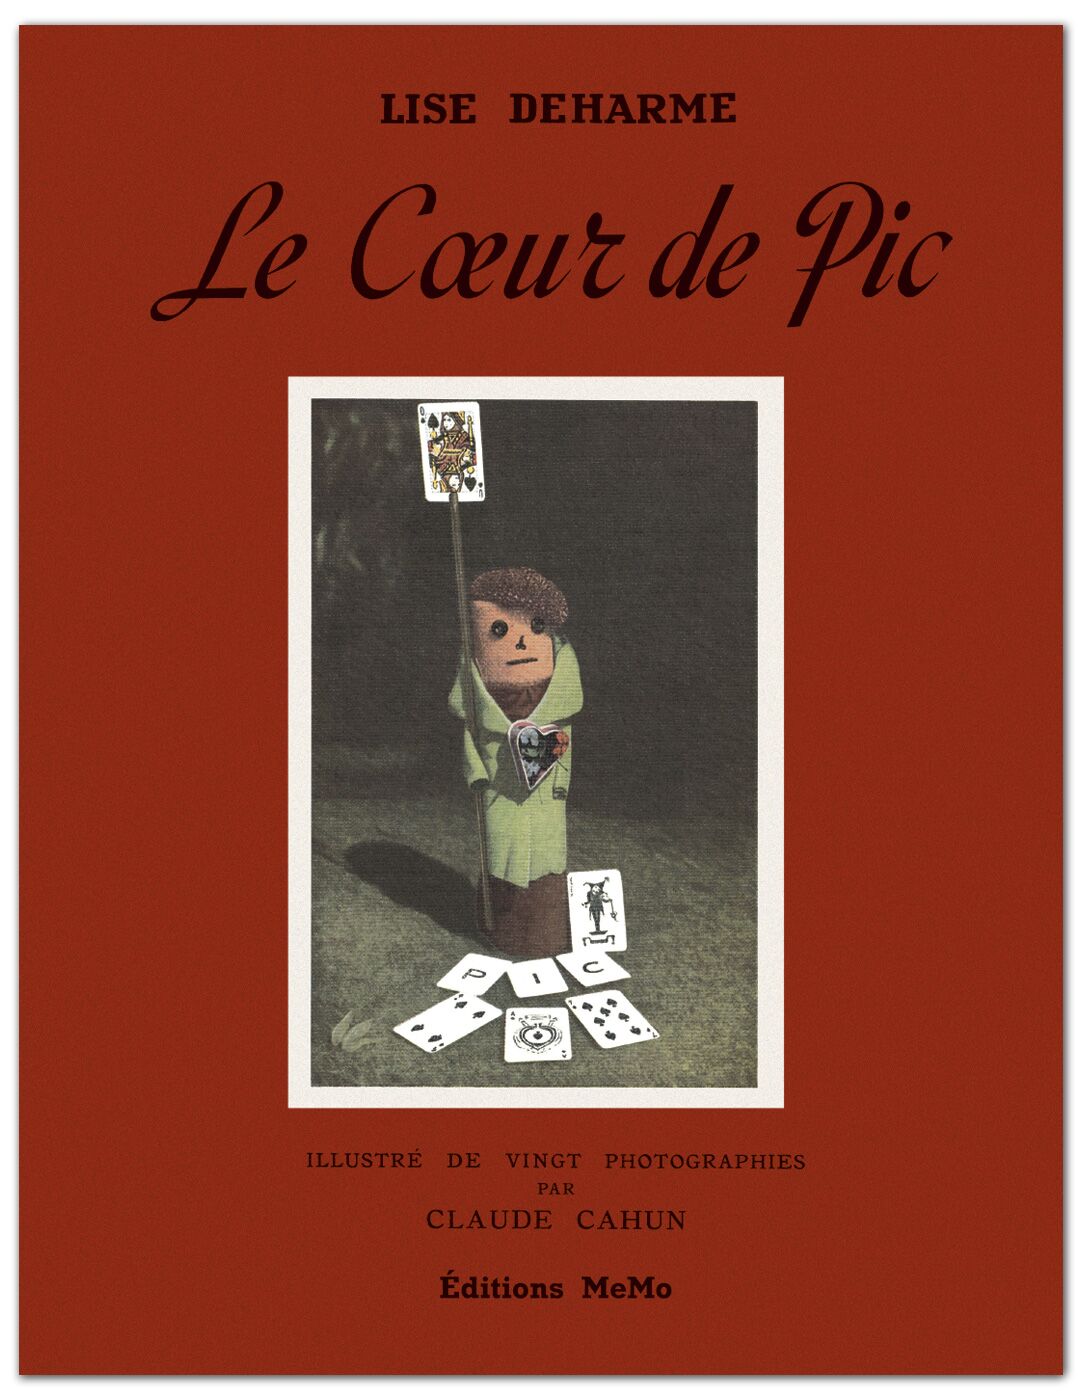 Lise Deharme, <br /><em>Le Cœur de Pic</em>, 1937